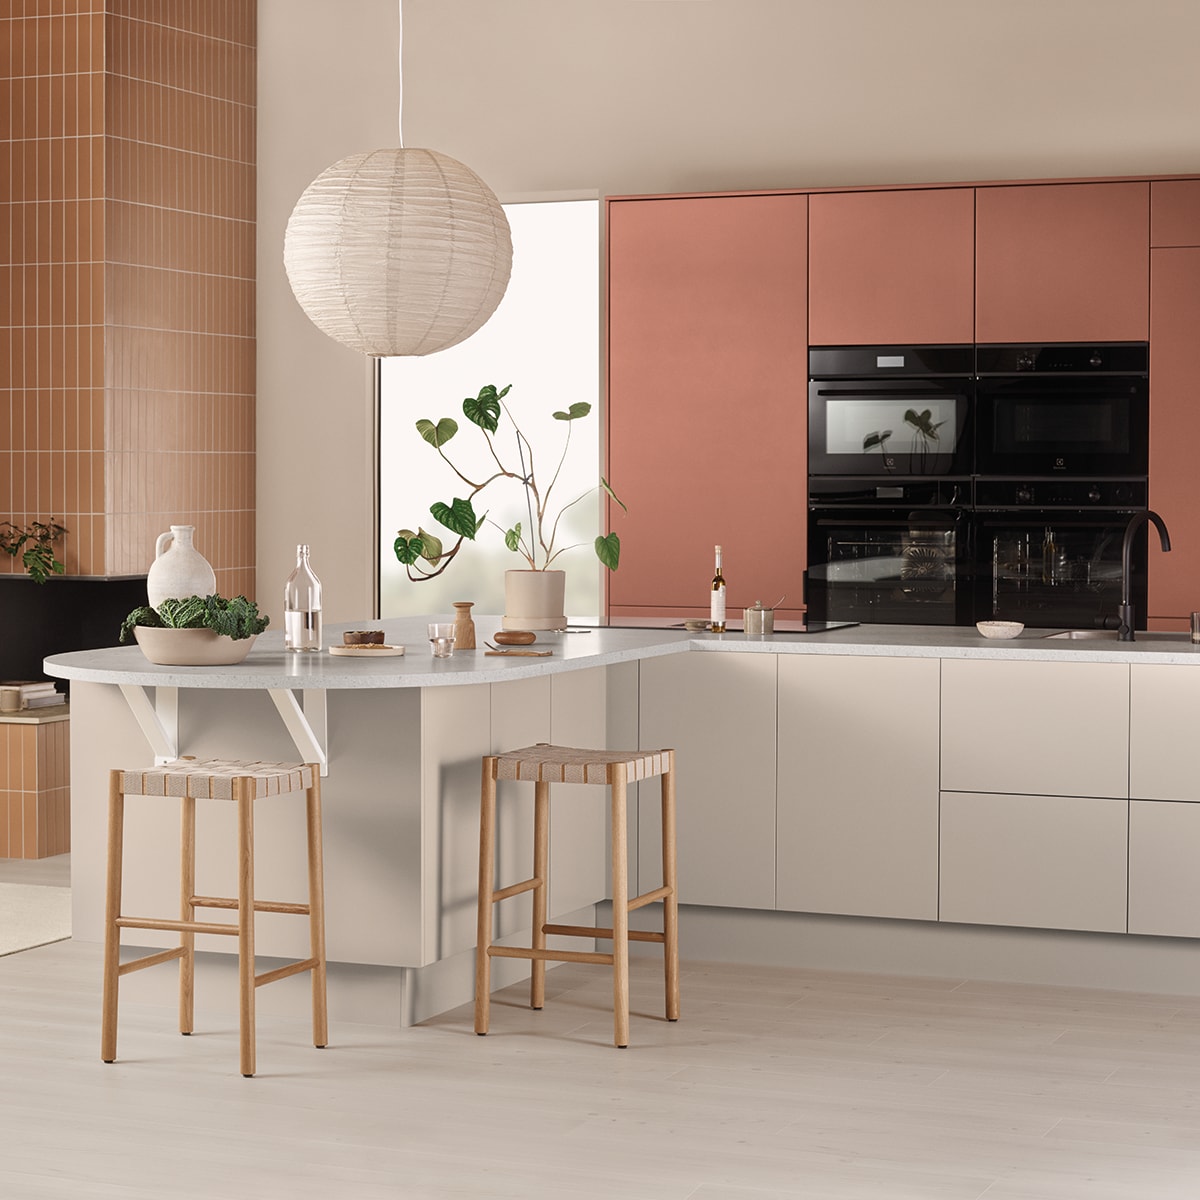 EPOQ - Kitchen - Trend Red Clay og Sand - Åpent kjøkkenløsning - Kjøkkenøy - Integrert ovn